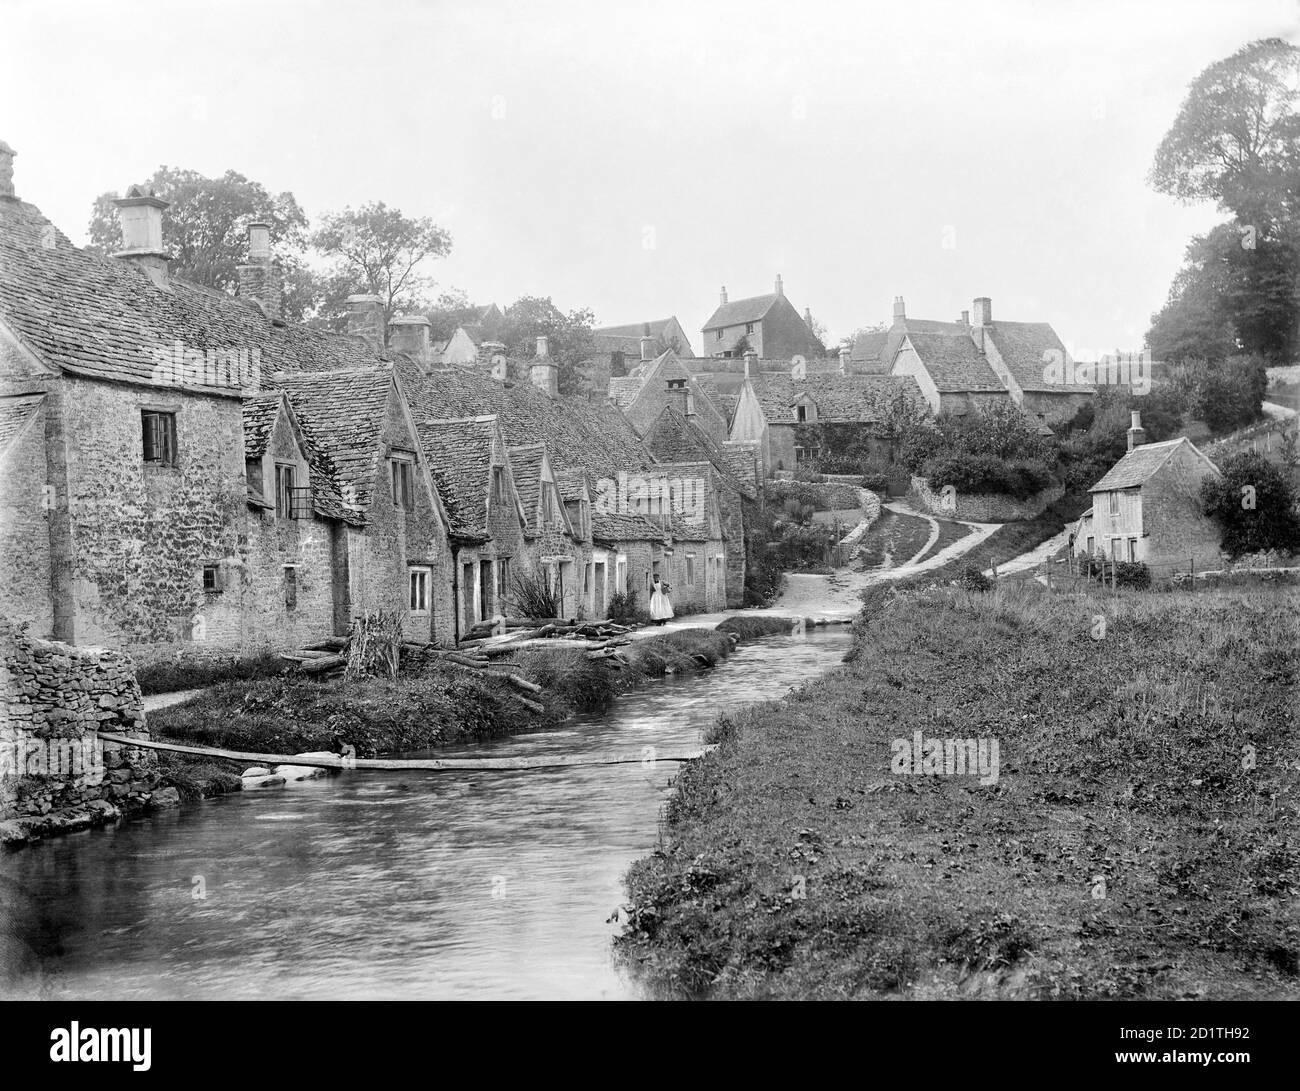 ARLINGTON ROW, Bibury, Gloucestershire. Blick auf die bekannte Reihe von Cotswold Steinhütten am Fluss Coln. Diese wurden im frühen 17. Jahrhundert in Wohnungen aus einem klösterlichen Schafhaus aus der zeit um 1380 mit zehn Buchten von Kruckbinen umgewandelt. Fotografiert 1901 von Henry Taunt. Stockfoto